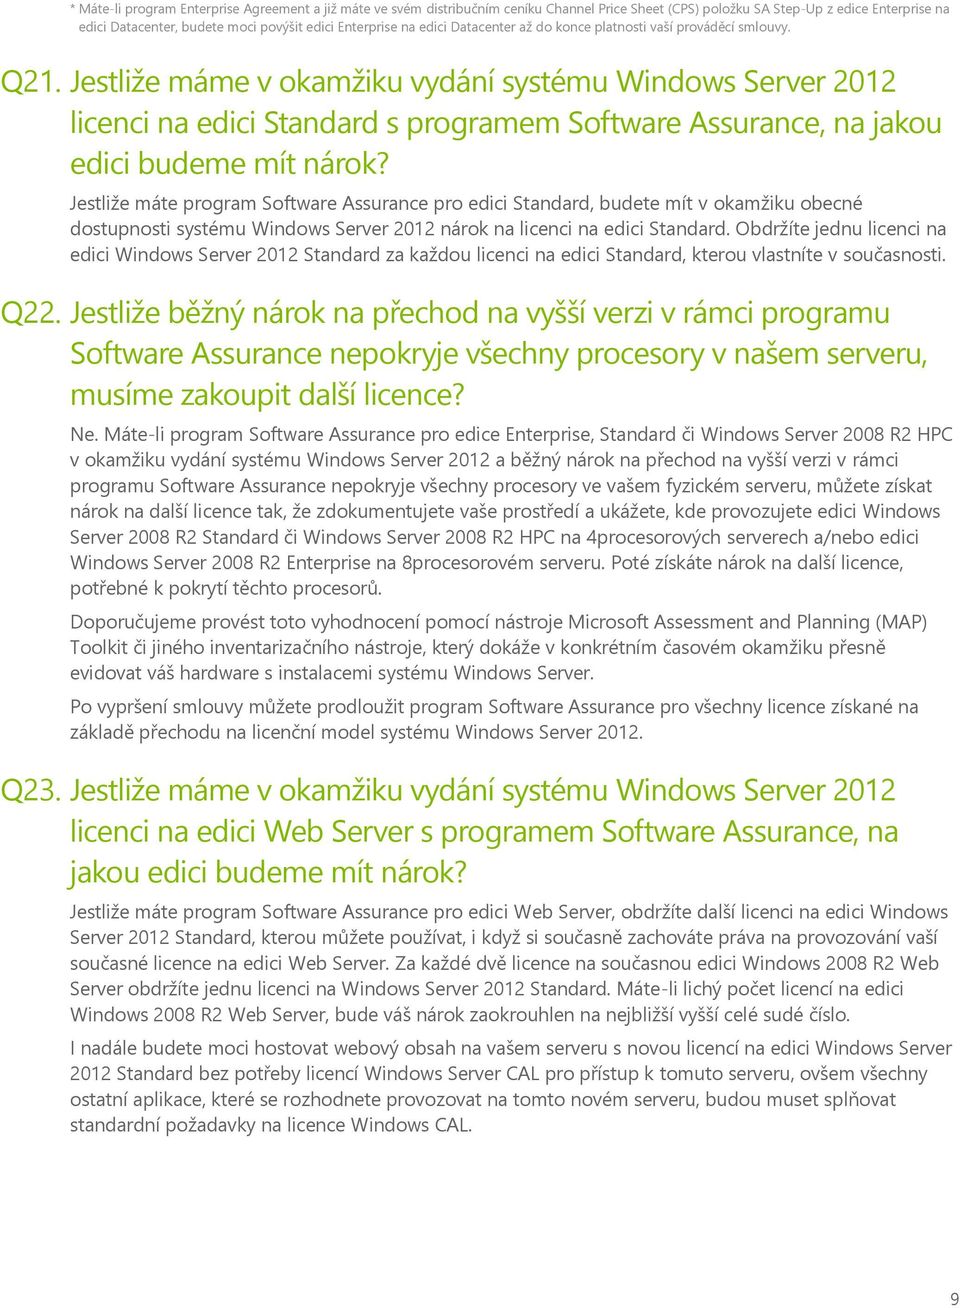 Jestliže máme v okamžiku vydání systému Windows Server 2012 licenci na edici Standard s programem Software Assurance, na jakou edici budeme mít nárok?